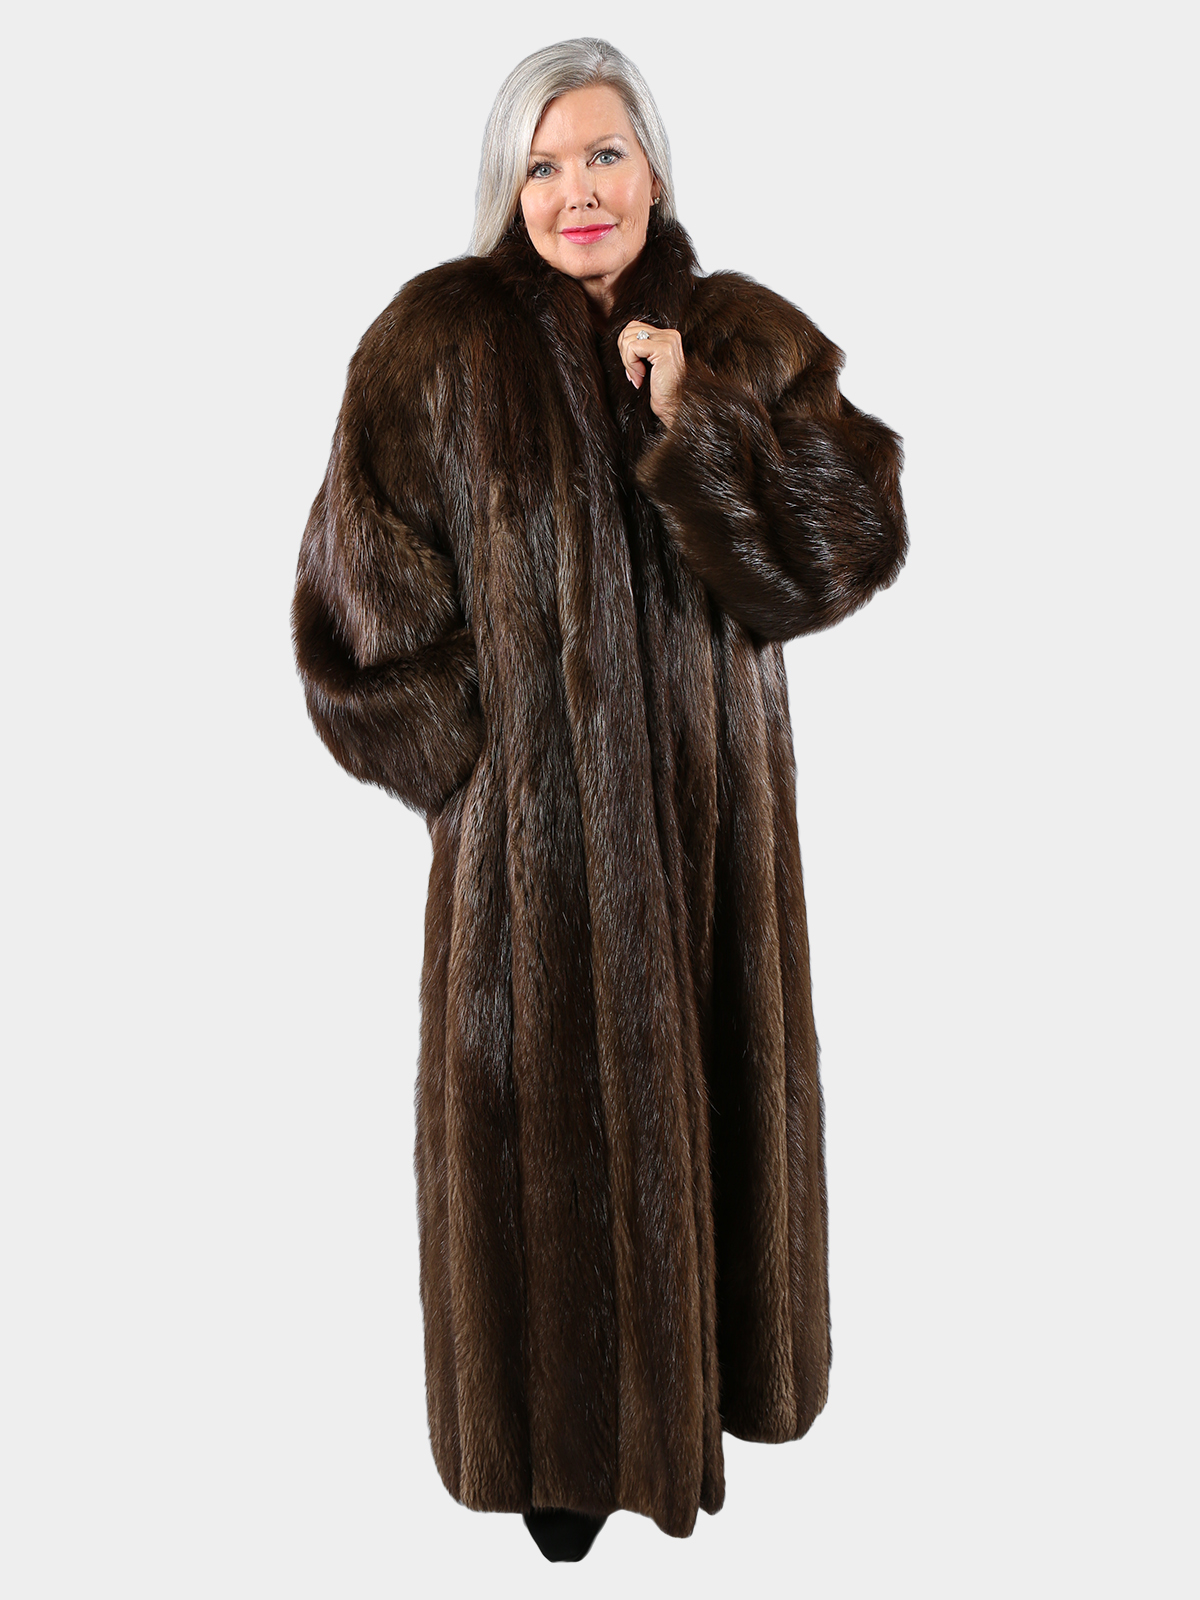 Medium Tone Long Hair Beaver Fur Coat (Women's XL) - Estate Furs